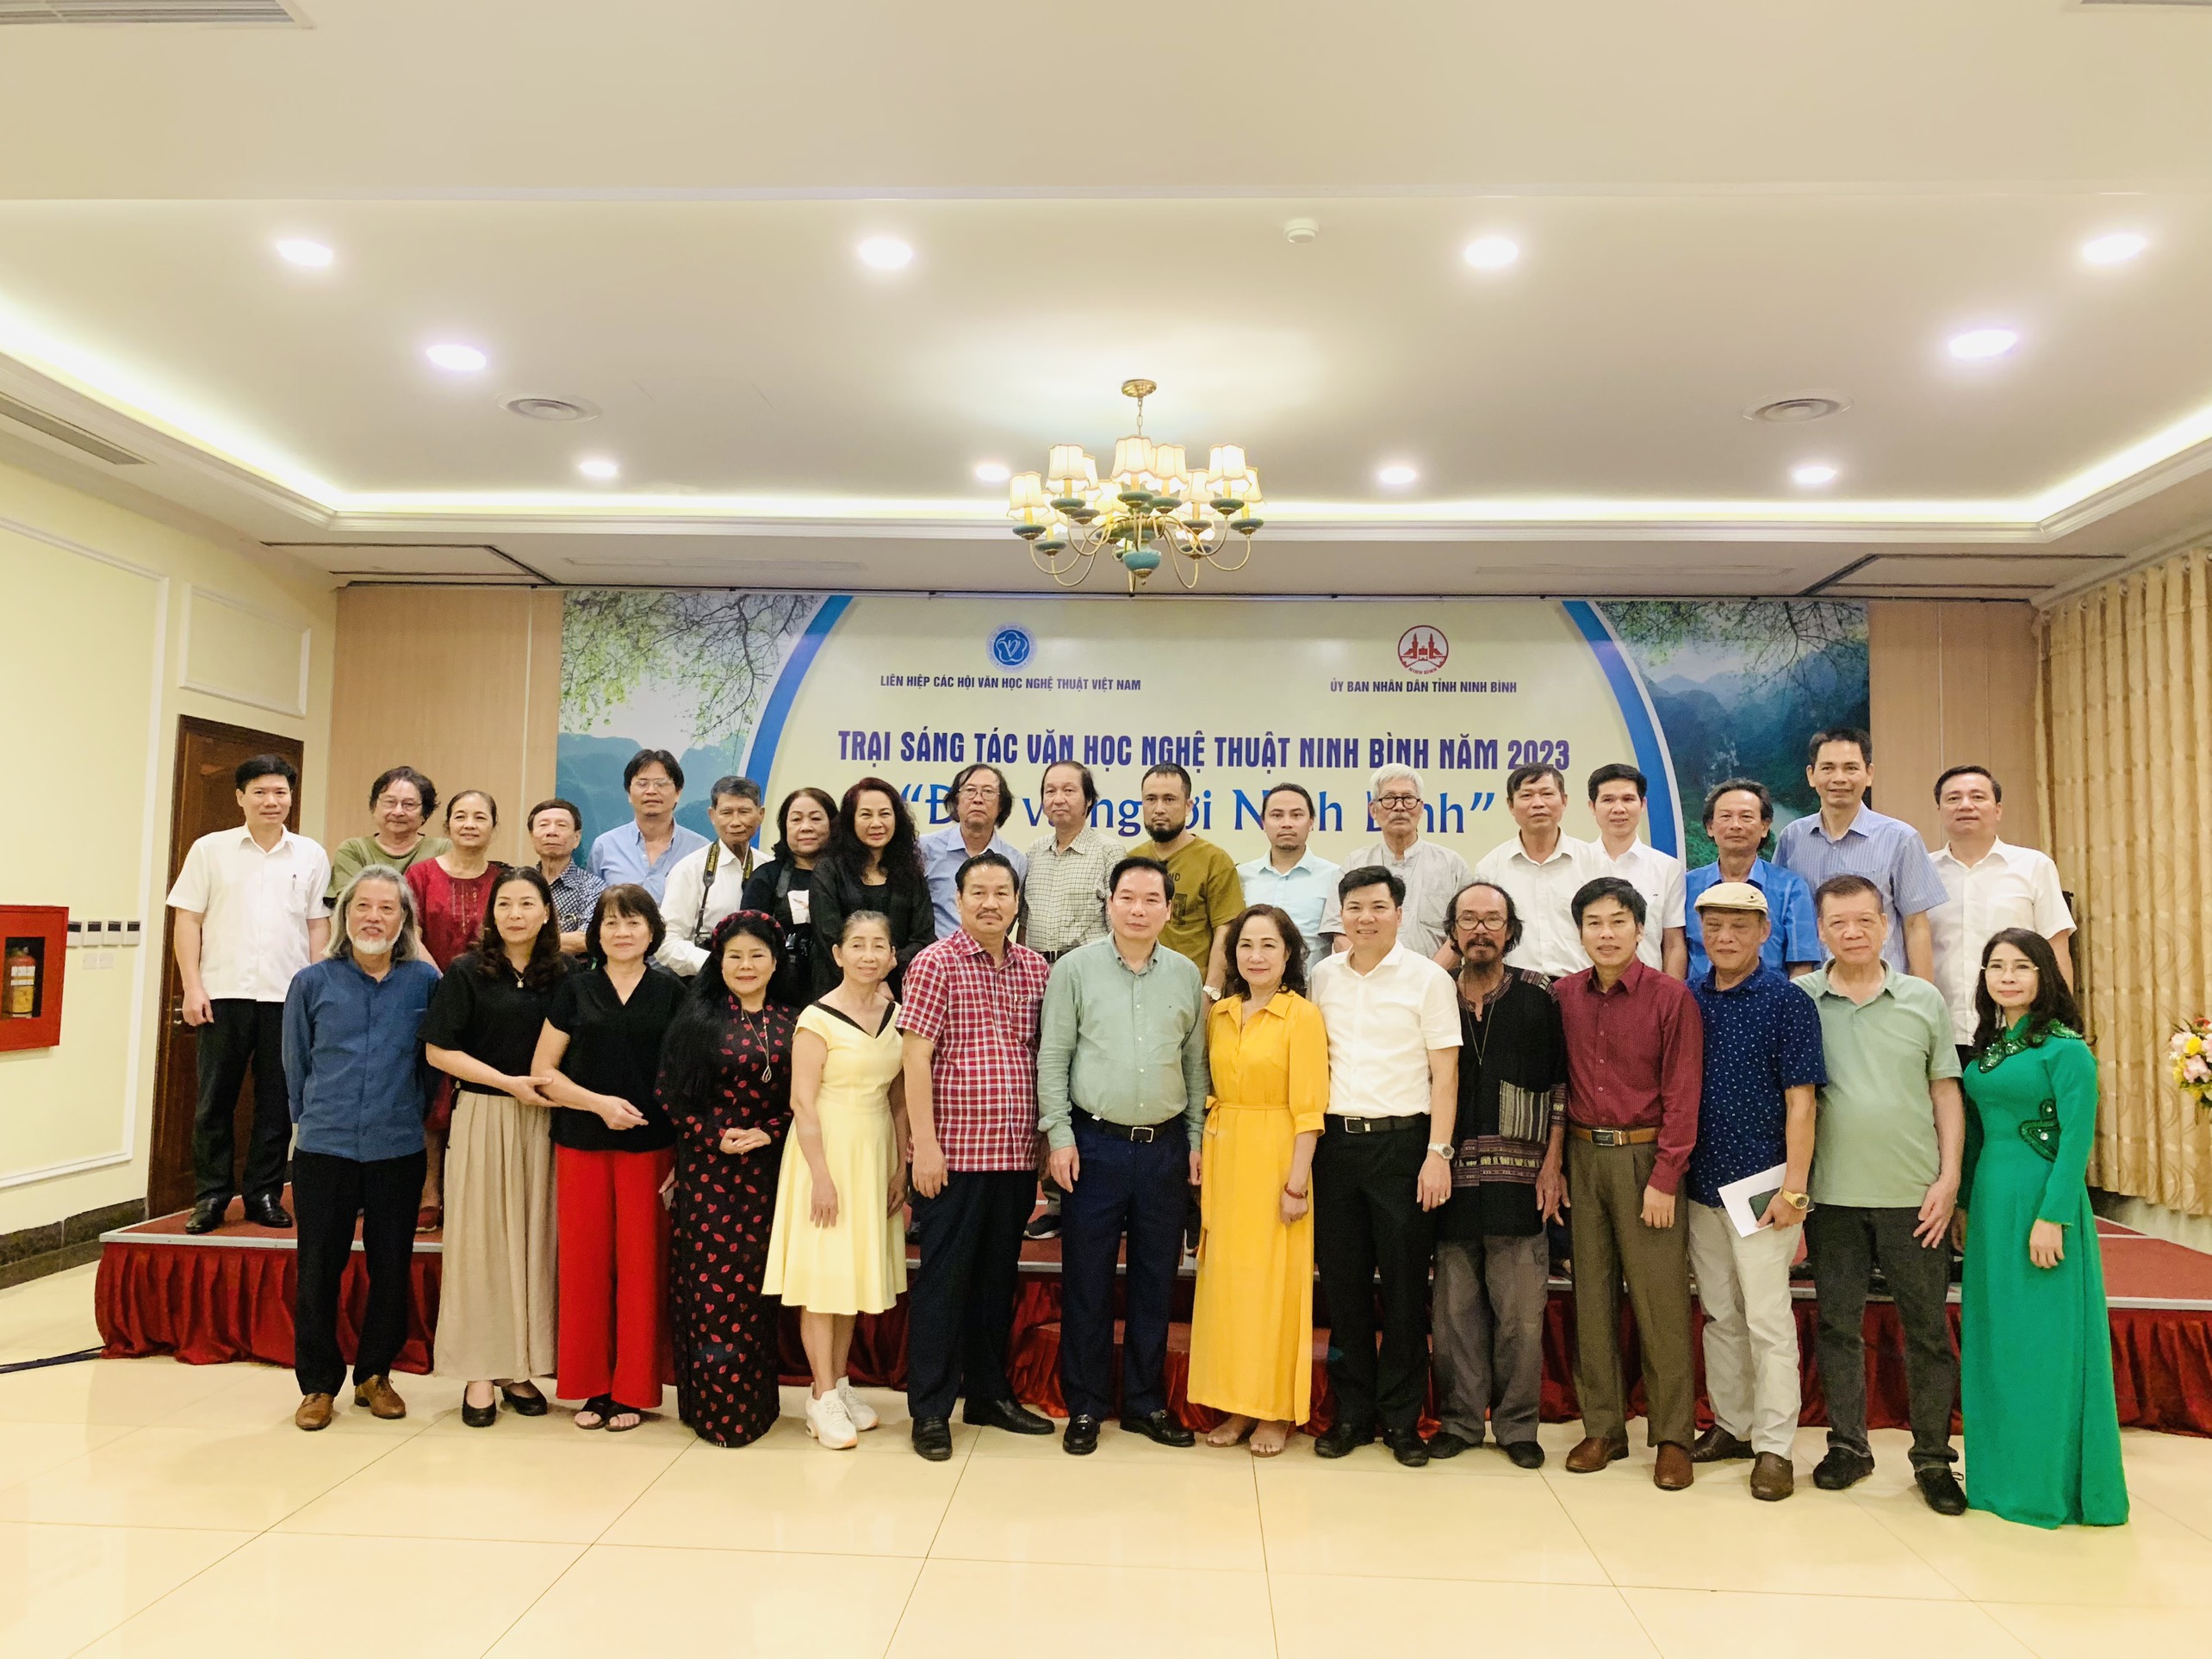 Dấu ấn Trại sáng tác văn học nghệ thuật Ninh Bình năm 2023